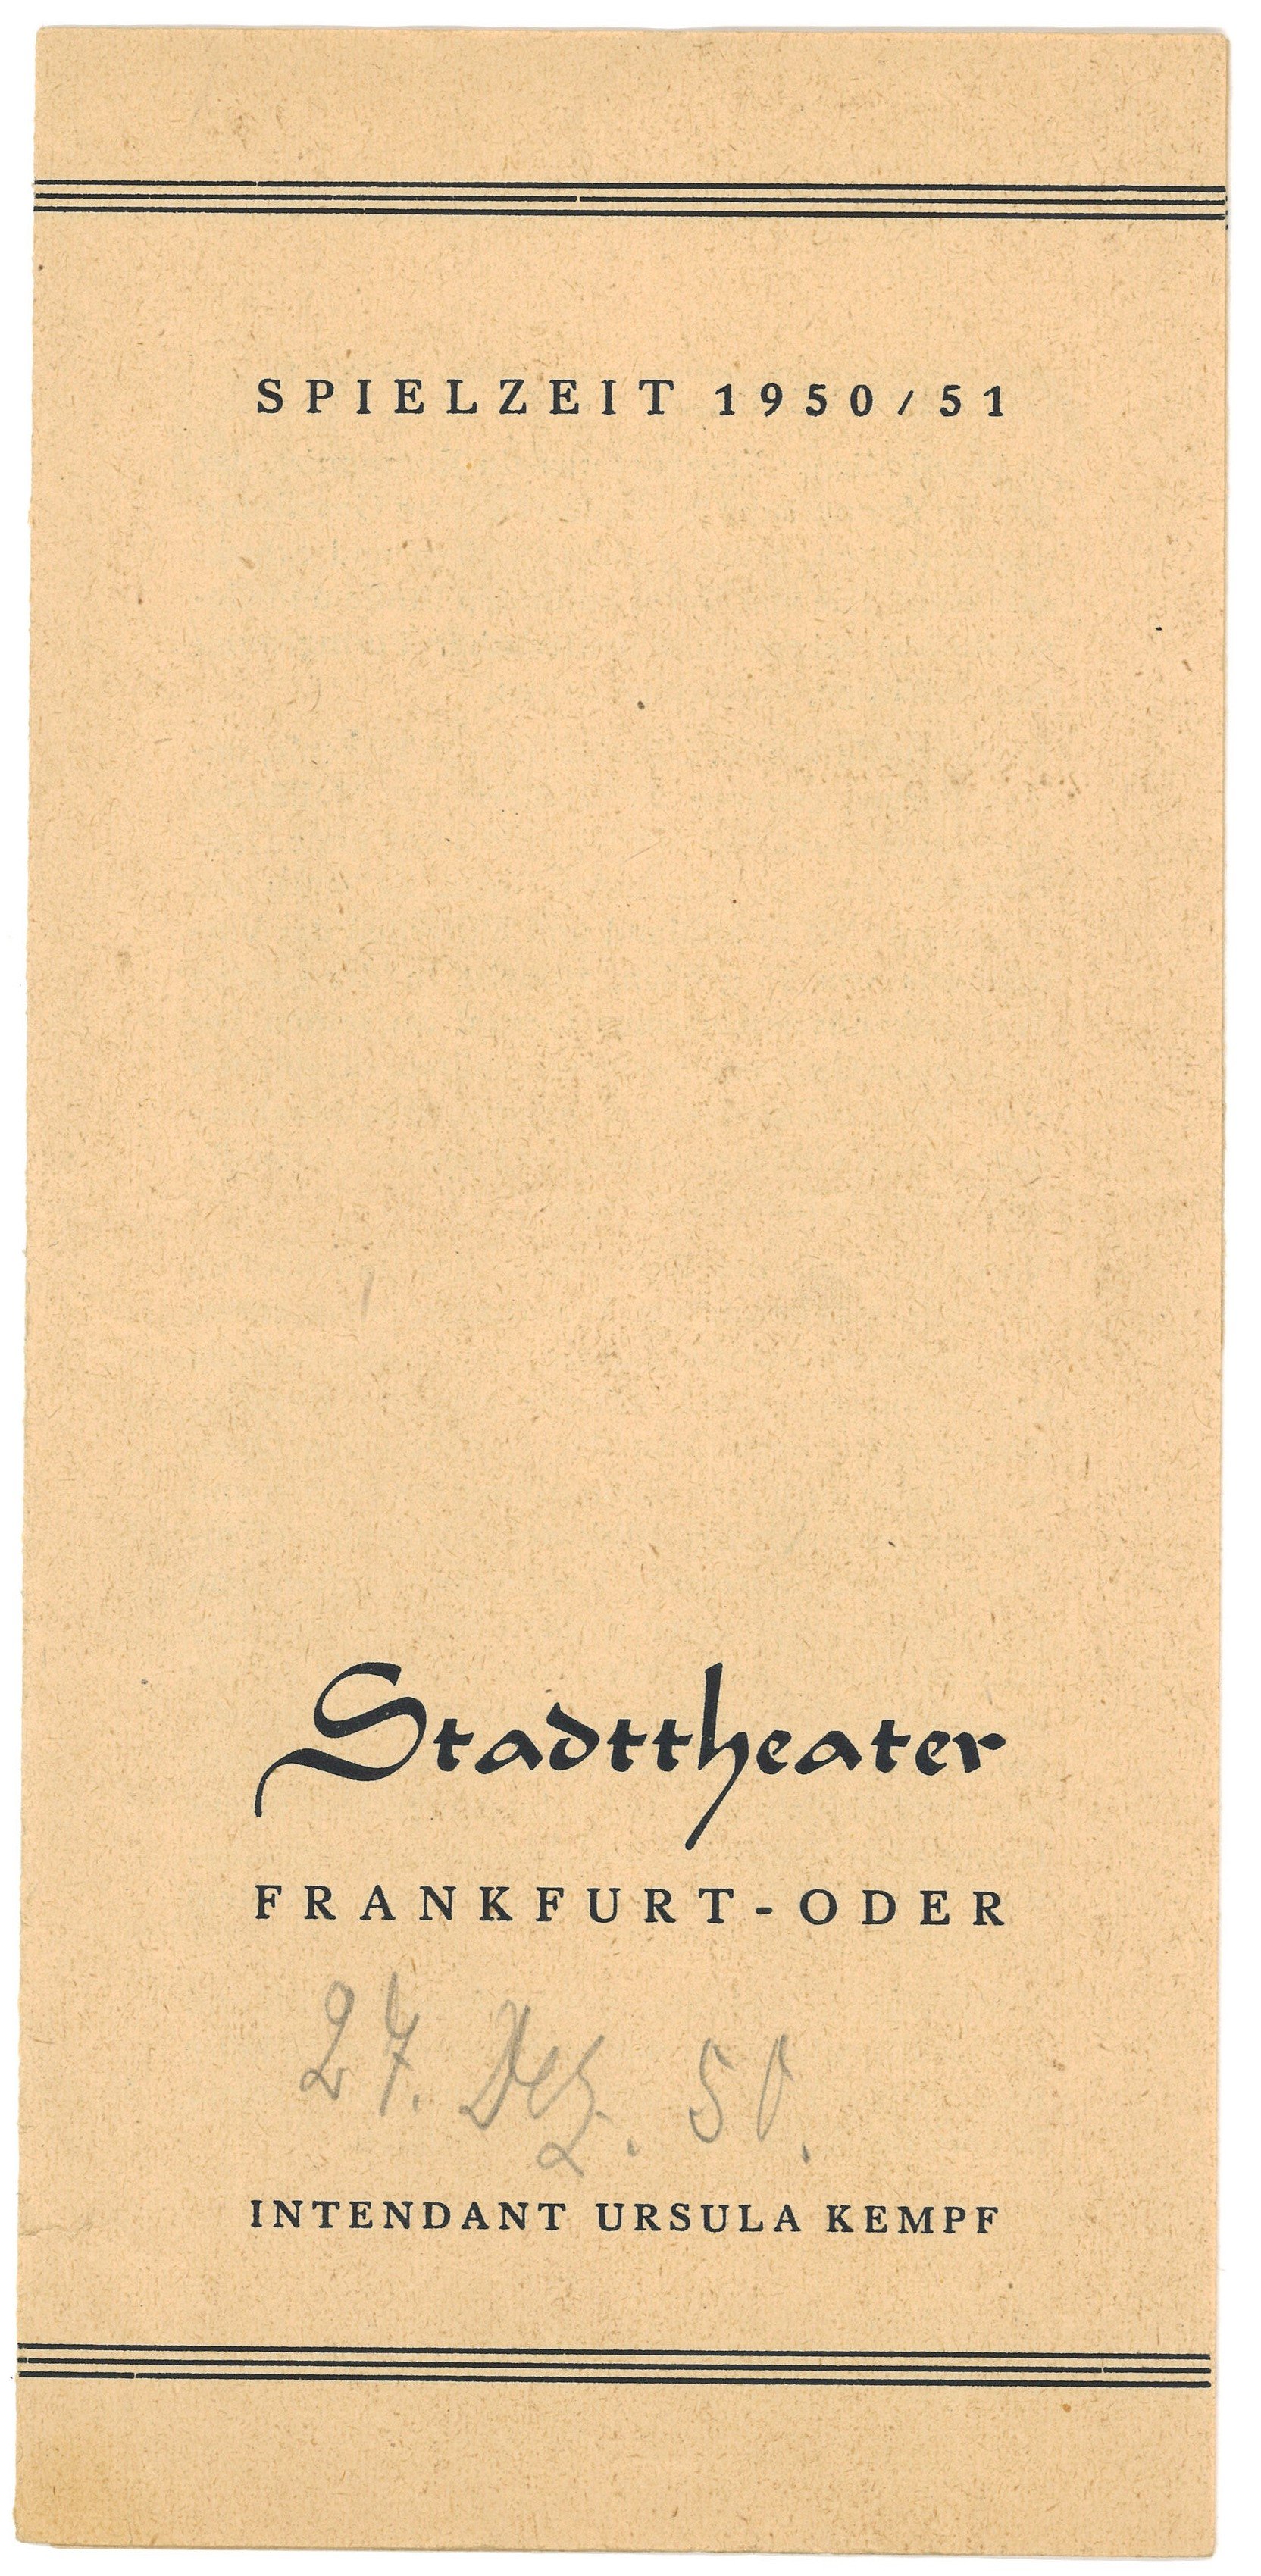 Programm des Stadttheaters Frankfurt (Oder)für "Rigoletto" um 1950/51 (Landesgeschichtliche Vereinigung für die Mark Brandenburg e.V., Archiv CC BY)